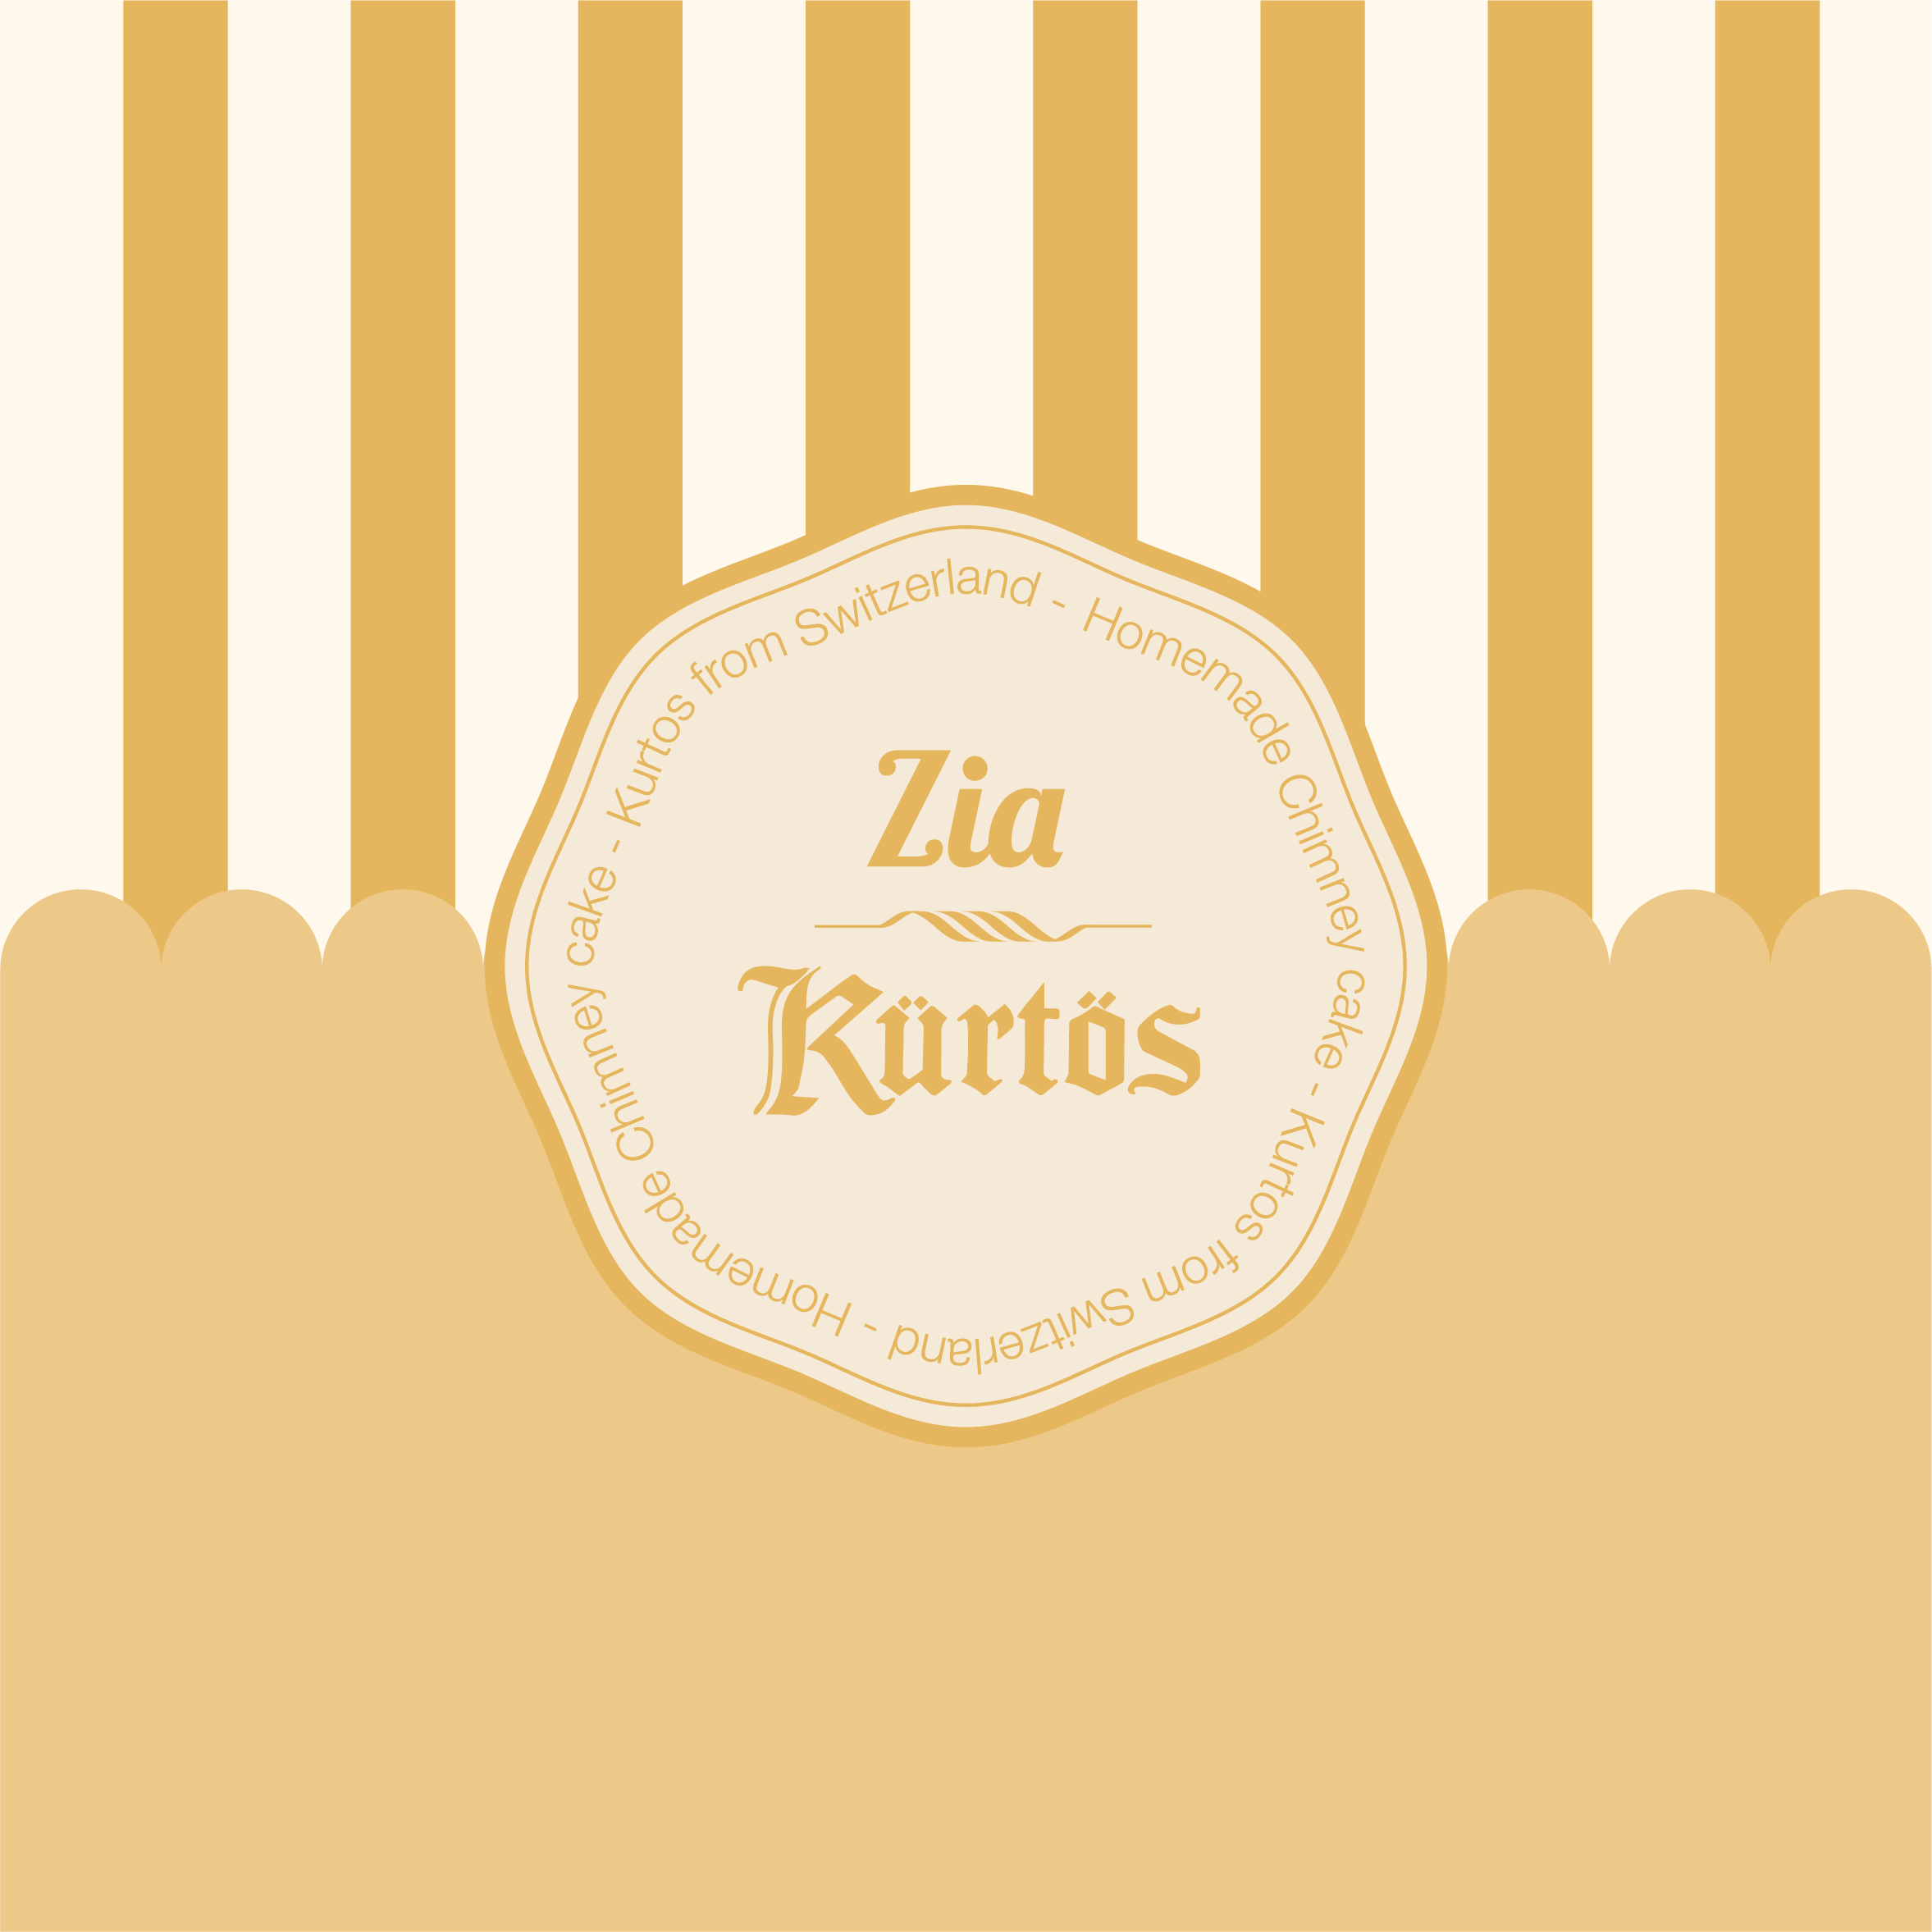 image de marque zia kurtos, fond jaune moutard avec des rayures beige. Esprit rétro vintage. Logo avec une typographie gothique